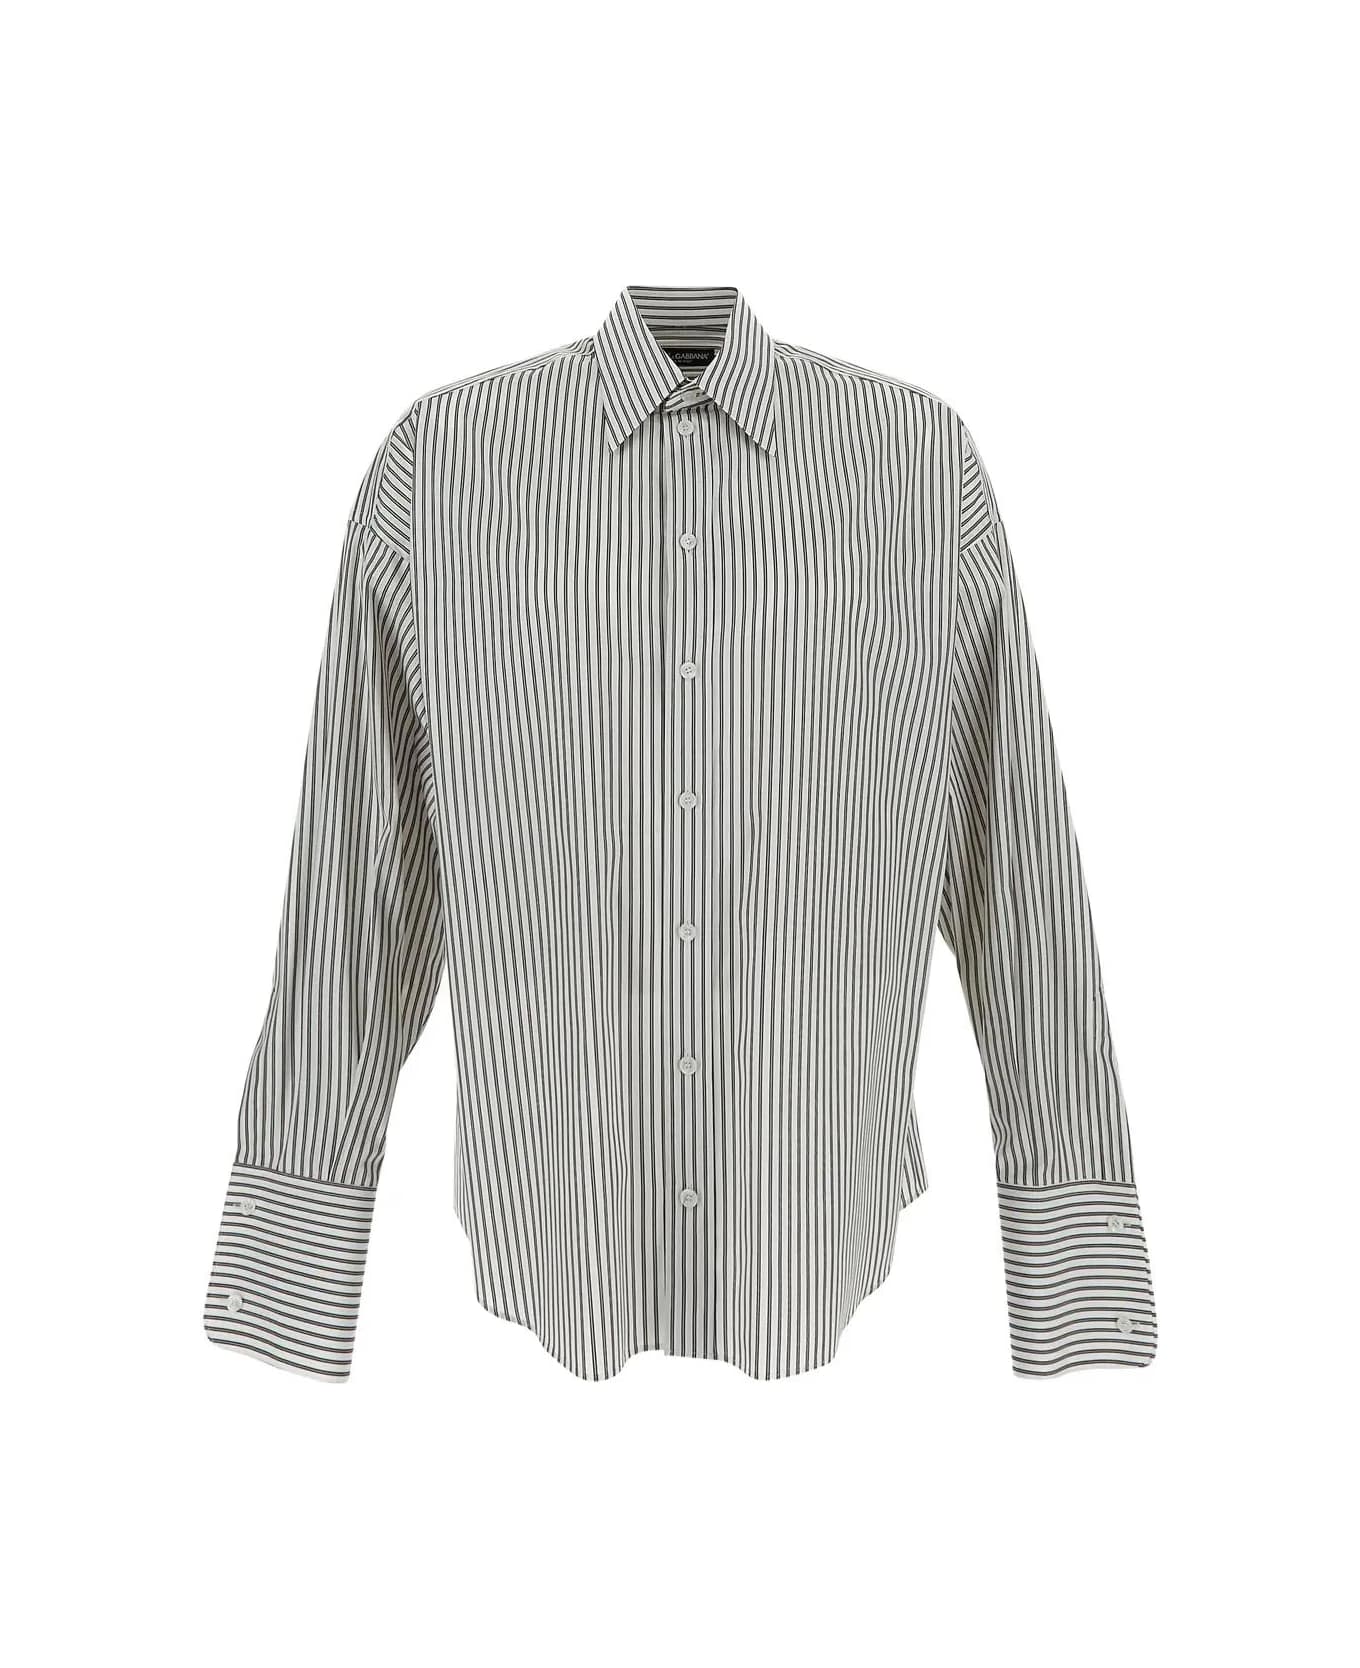 Dolce & Gabbana Cotton Shirt - WHITE/GREY